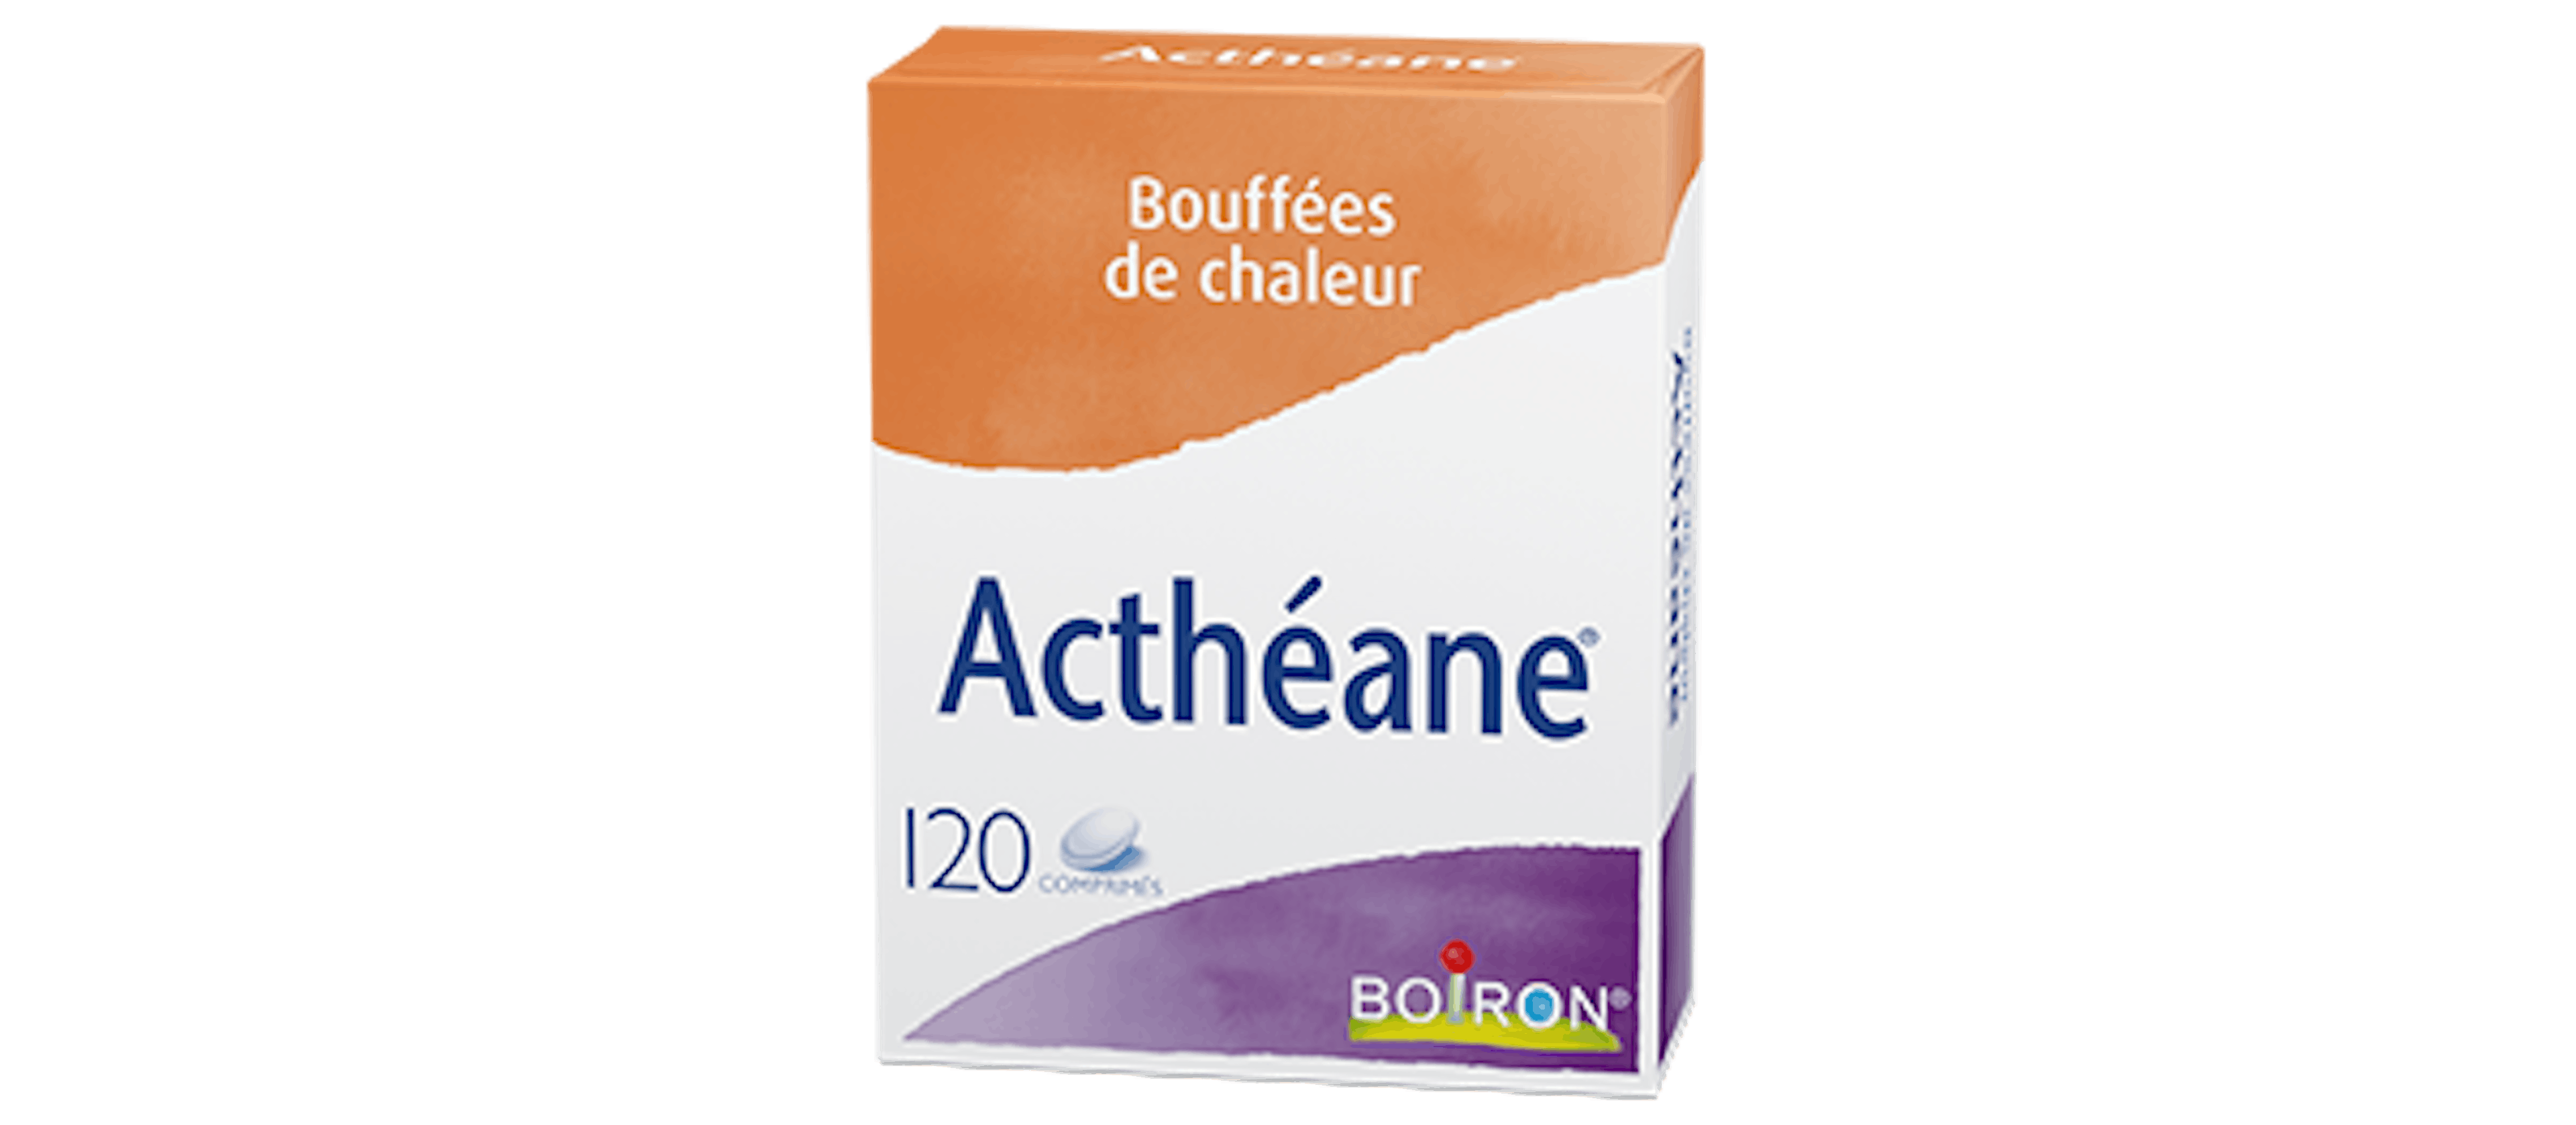 Homéopathie bouffées de chaleur, troubles ménopause - Actheane® Boiton